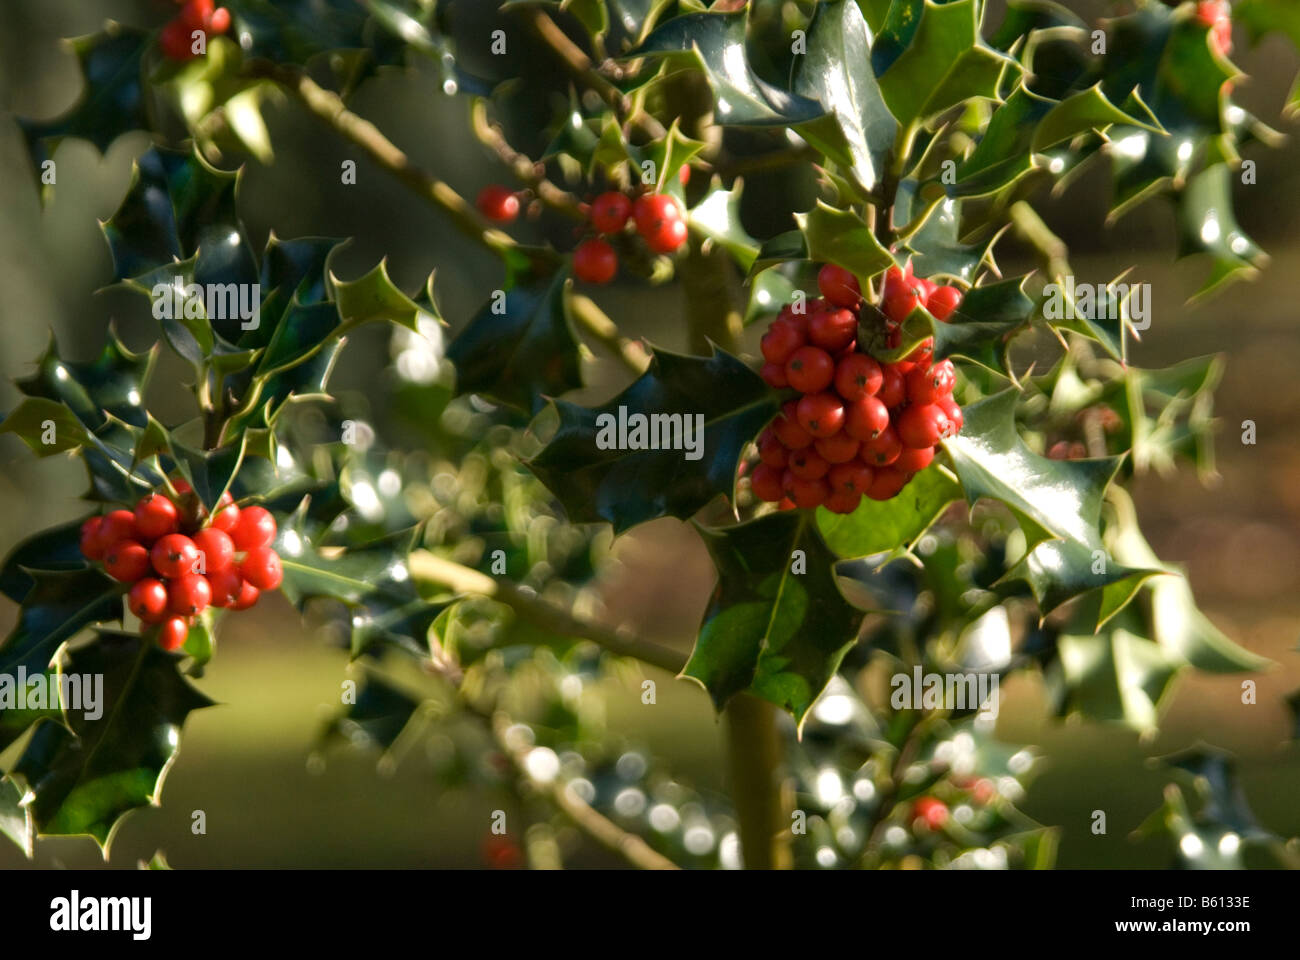 Una immagine di agrifoglio e bacche rosse affastellati assieme crescere da un holly tree Foto Stock